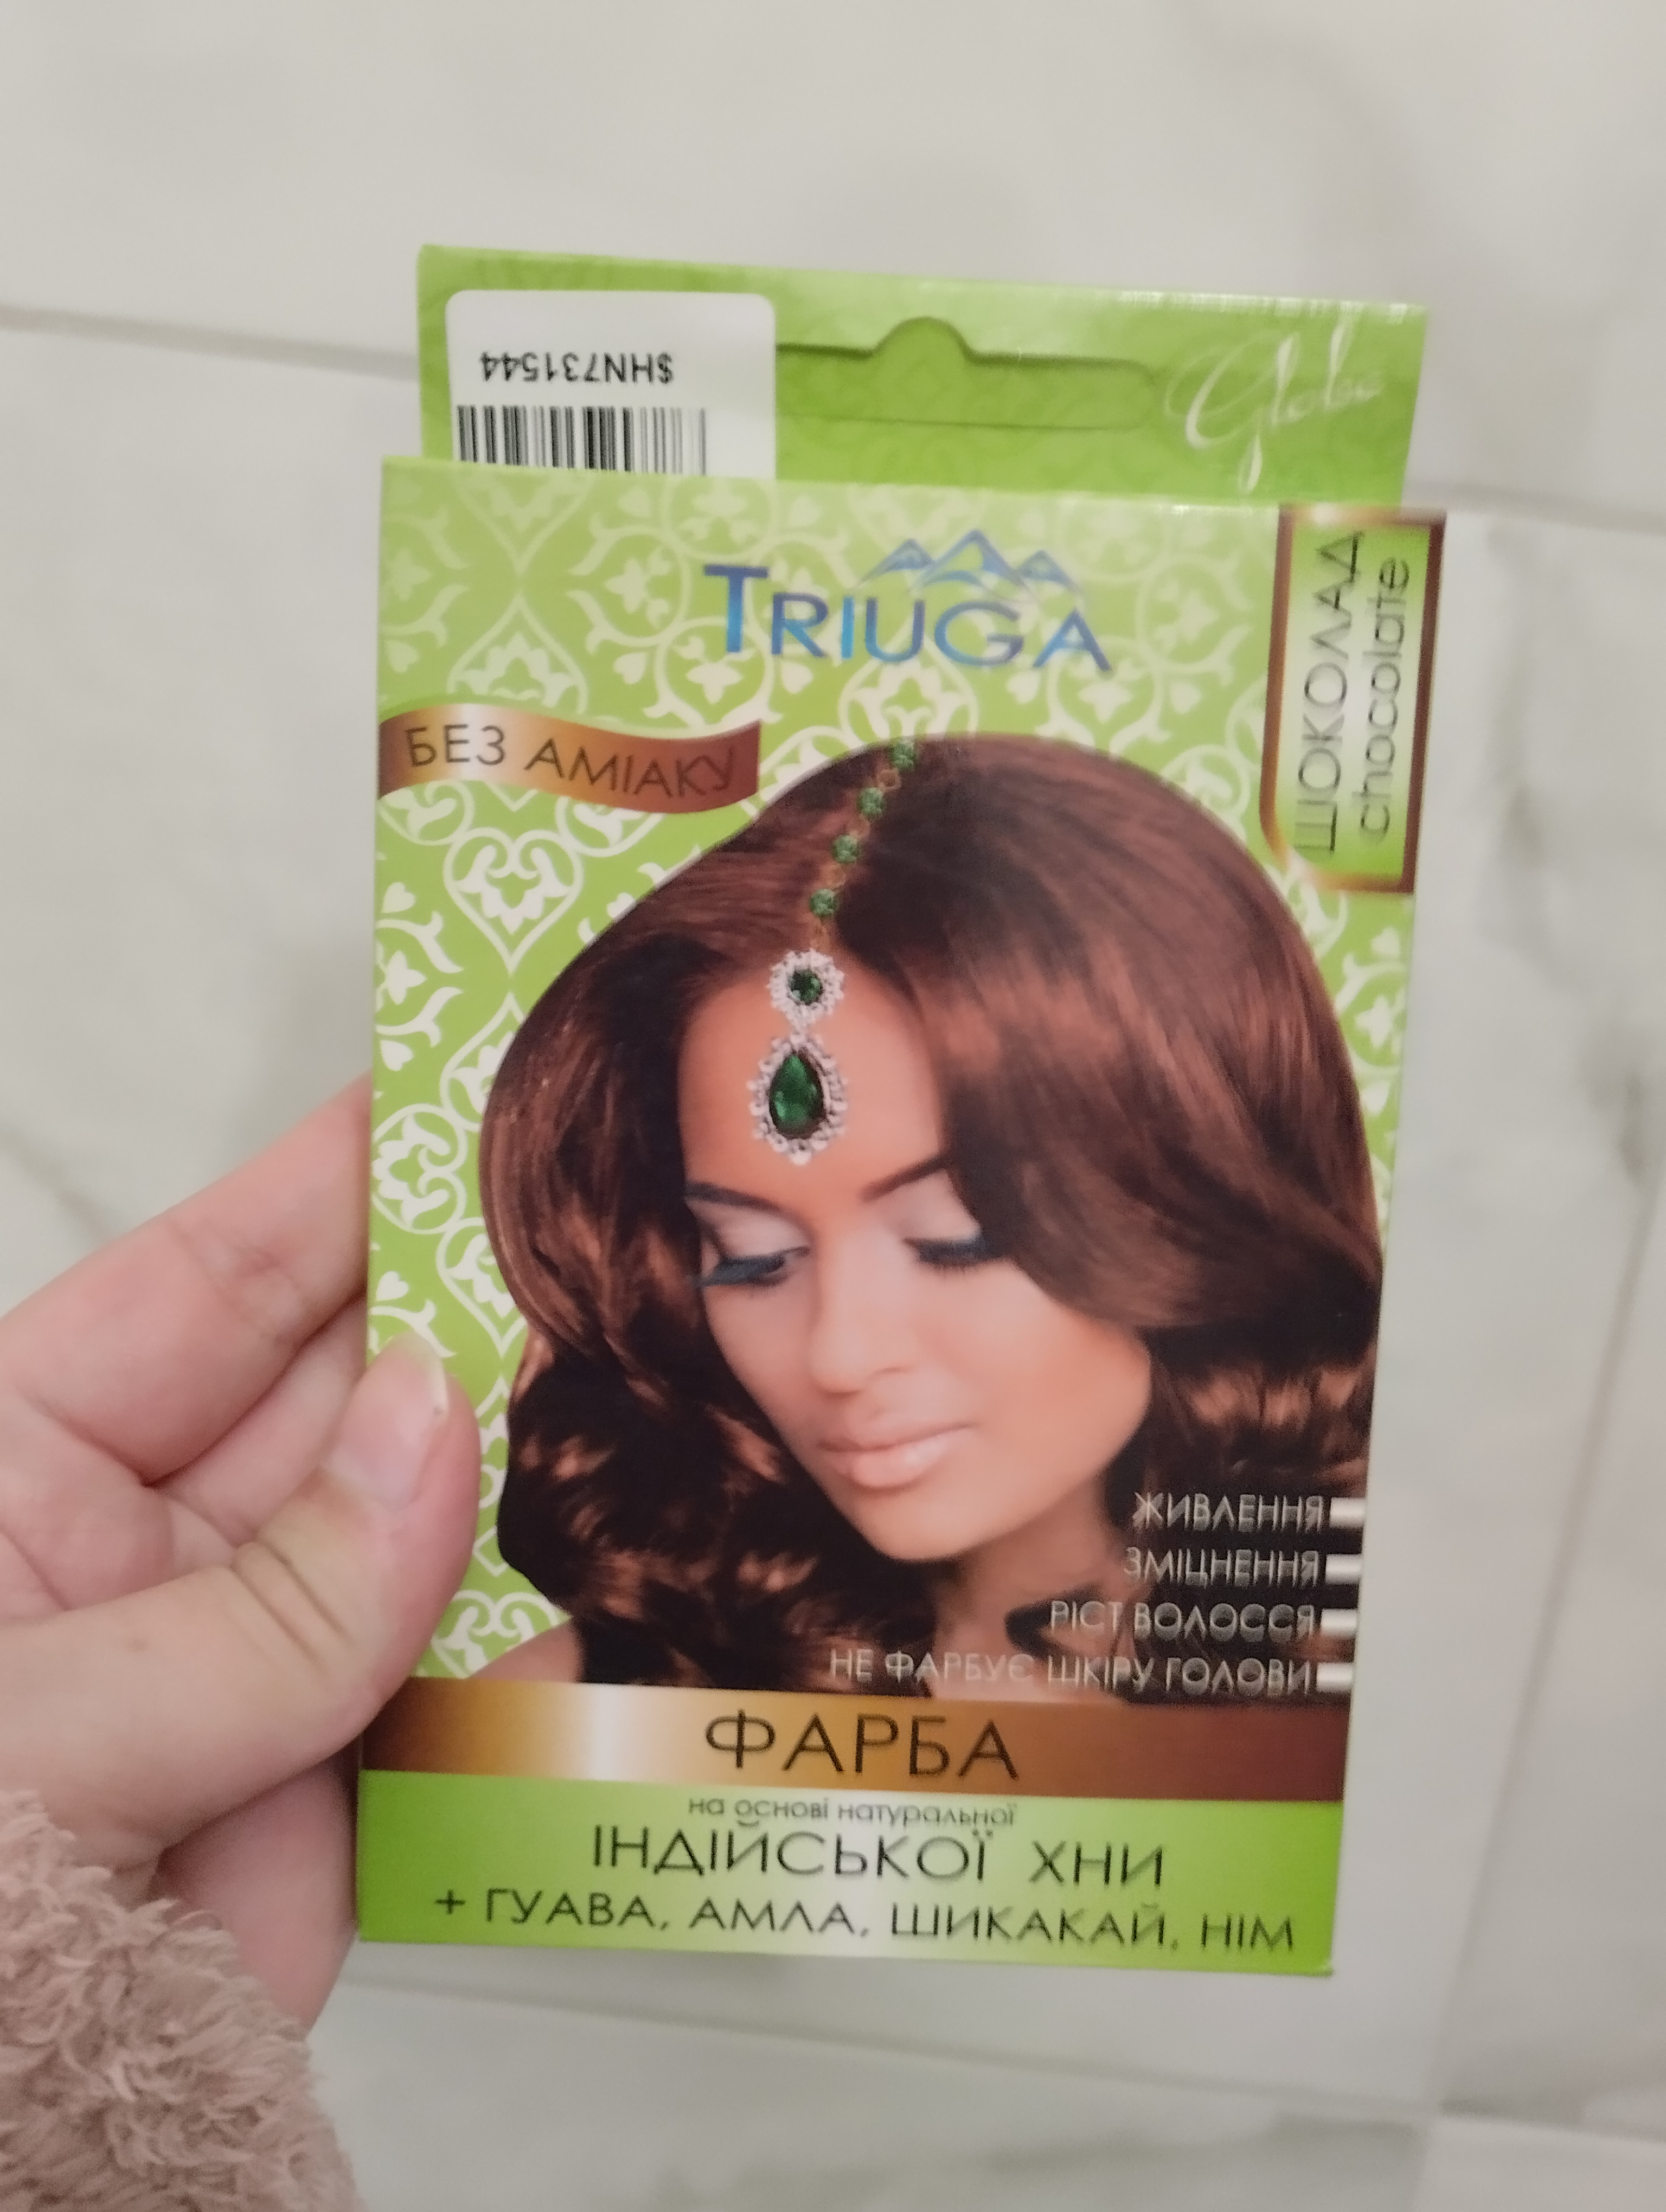 TRIUGA фарба для волосся на основі натуральної індійської хни